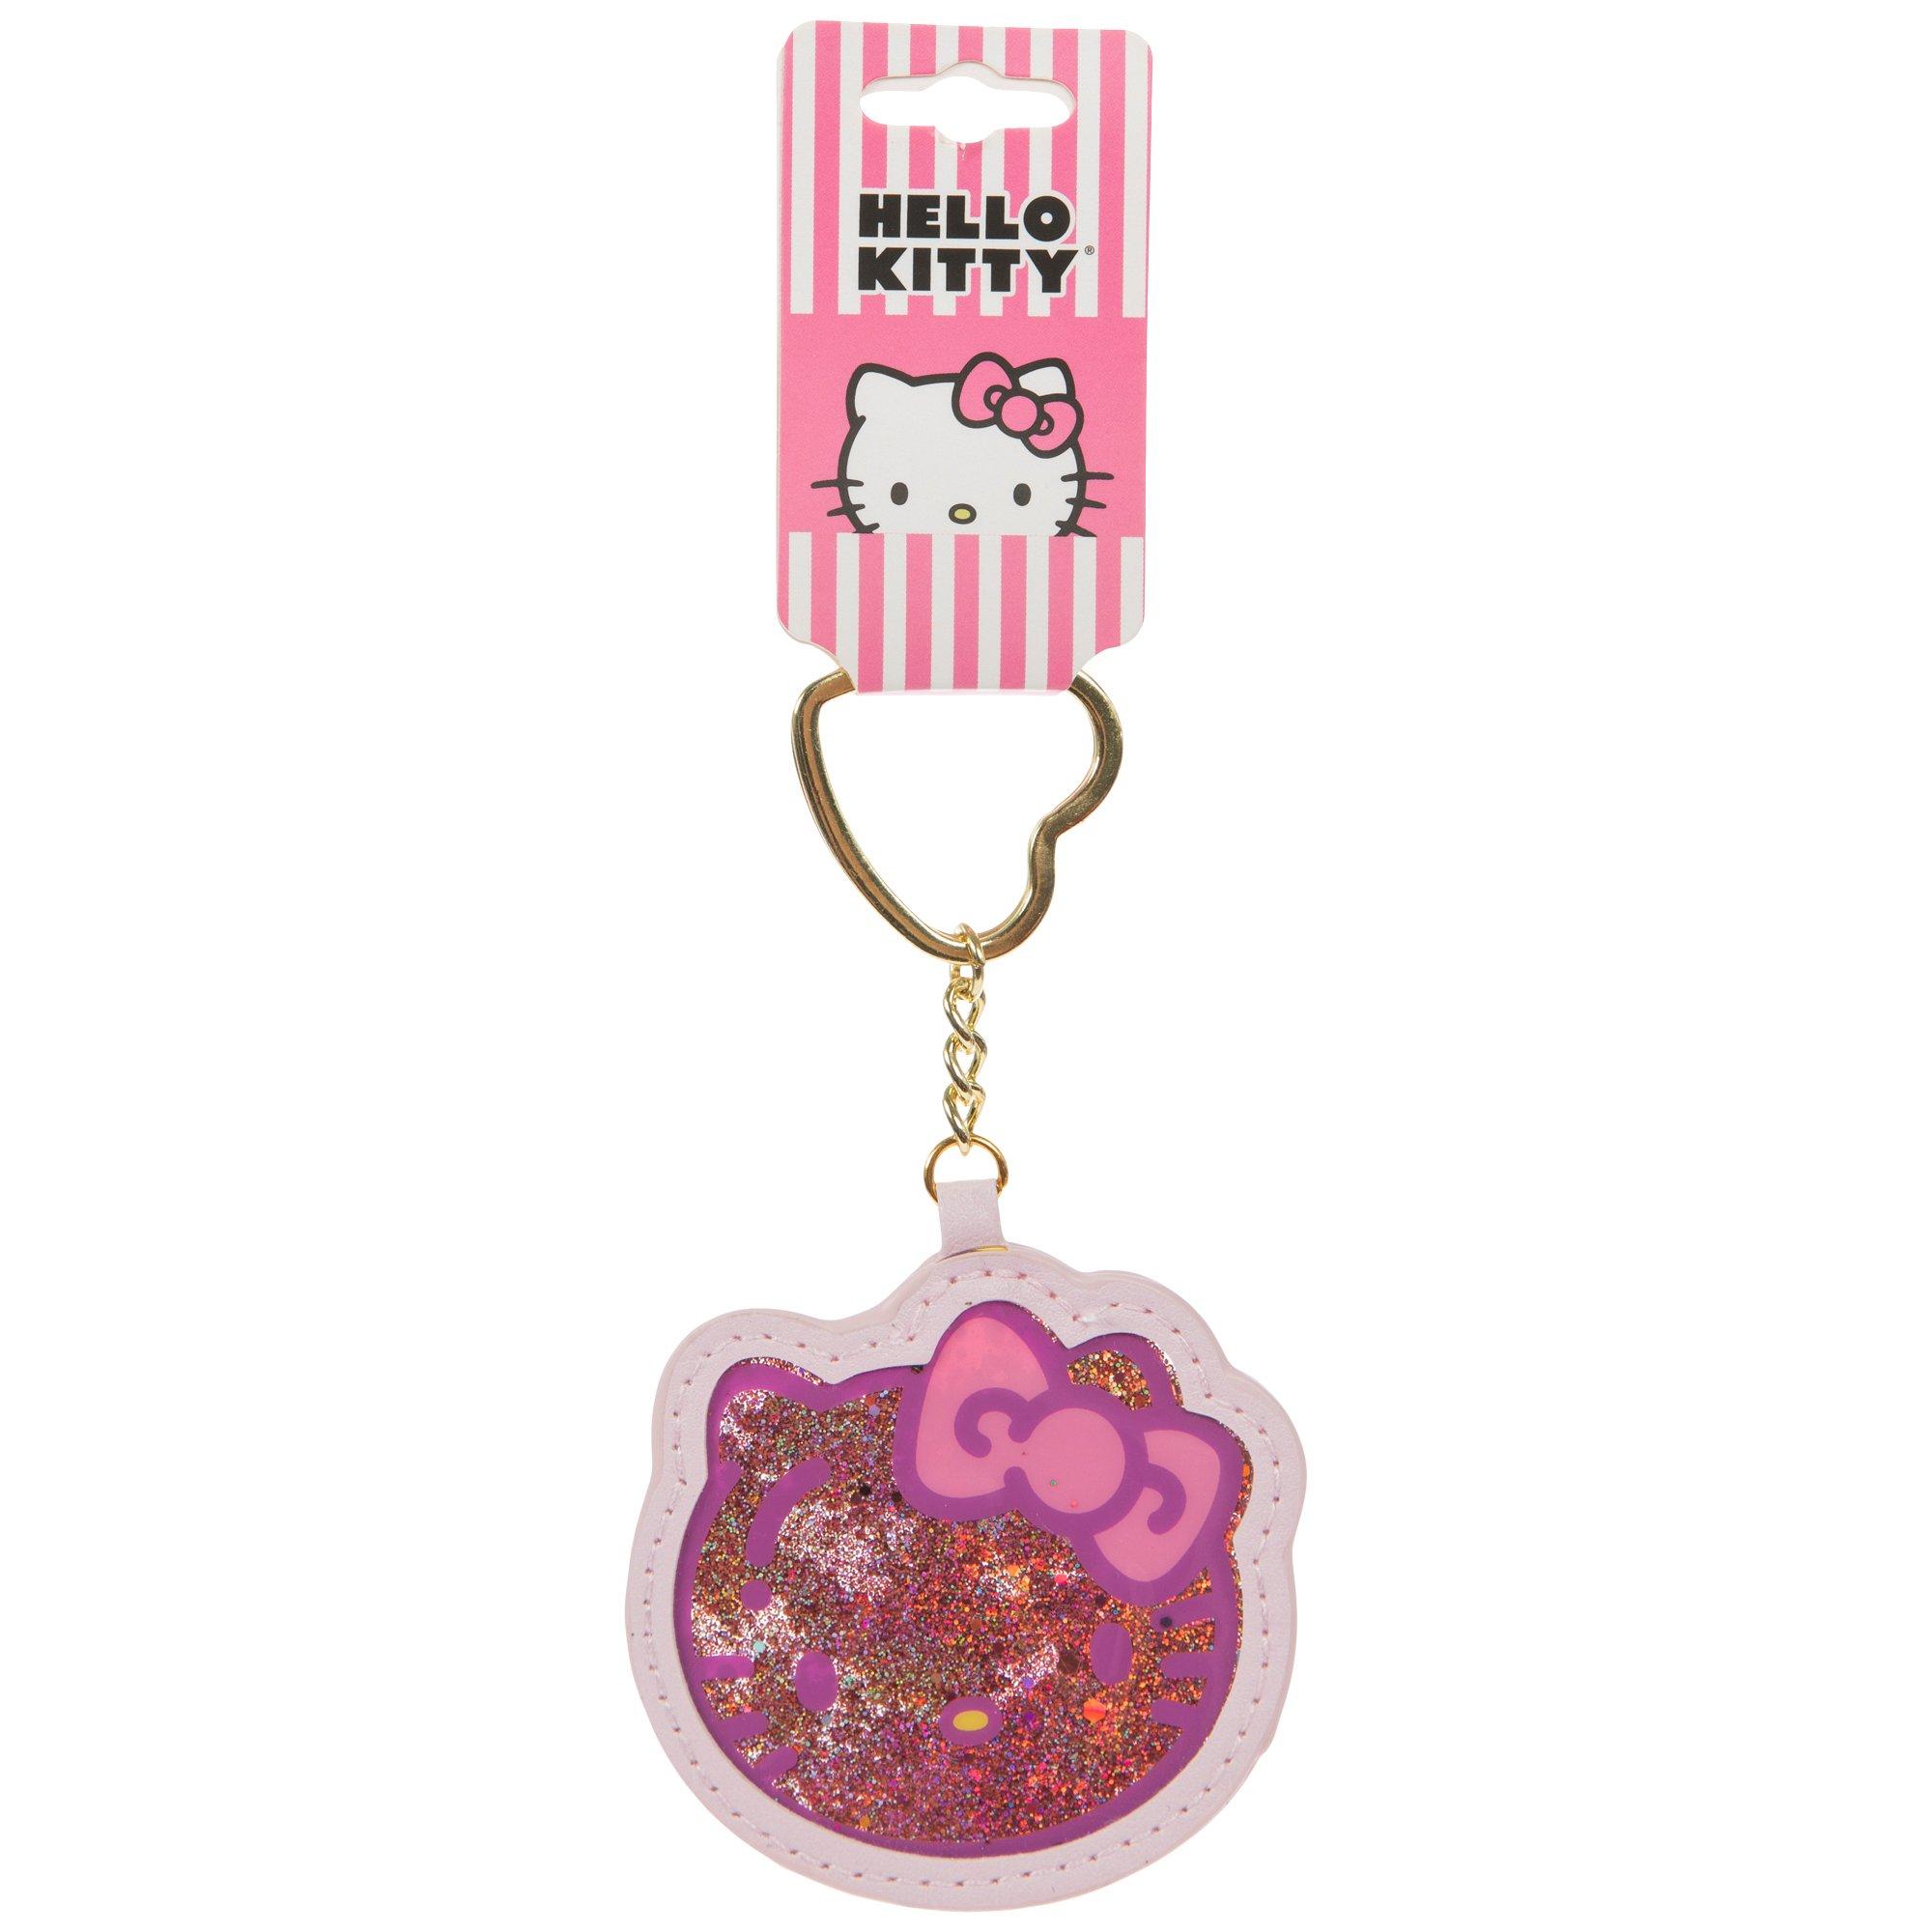 20 PZ Compleanno Gadget Portachiavi Sonaglino Hello Kitty